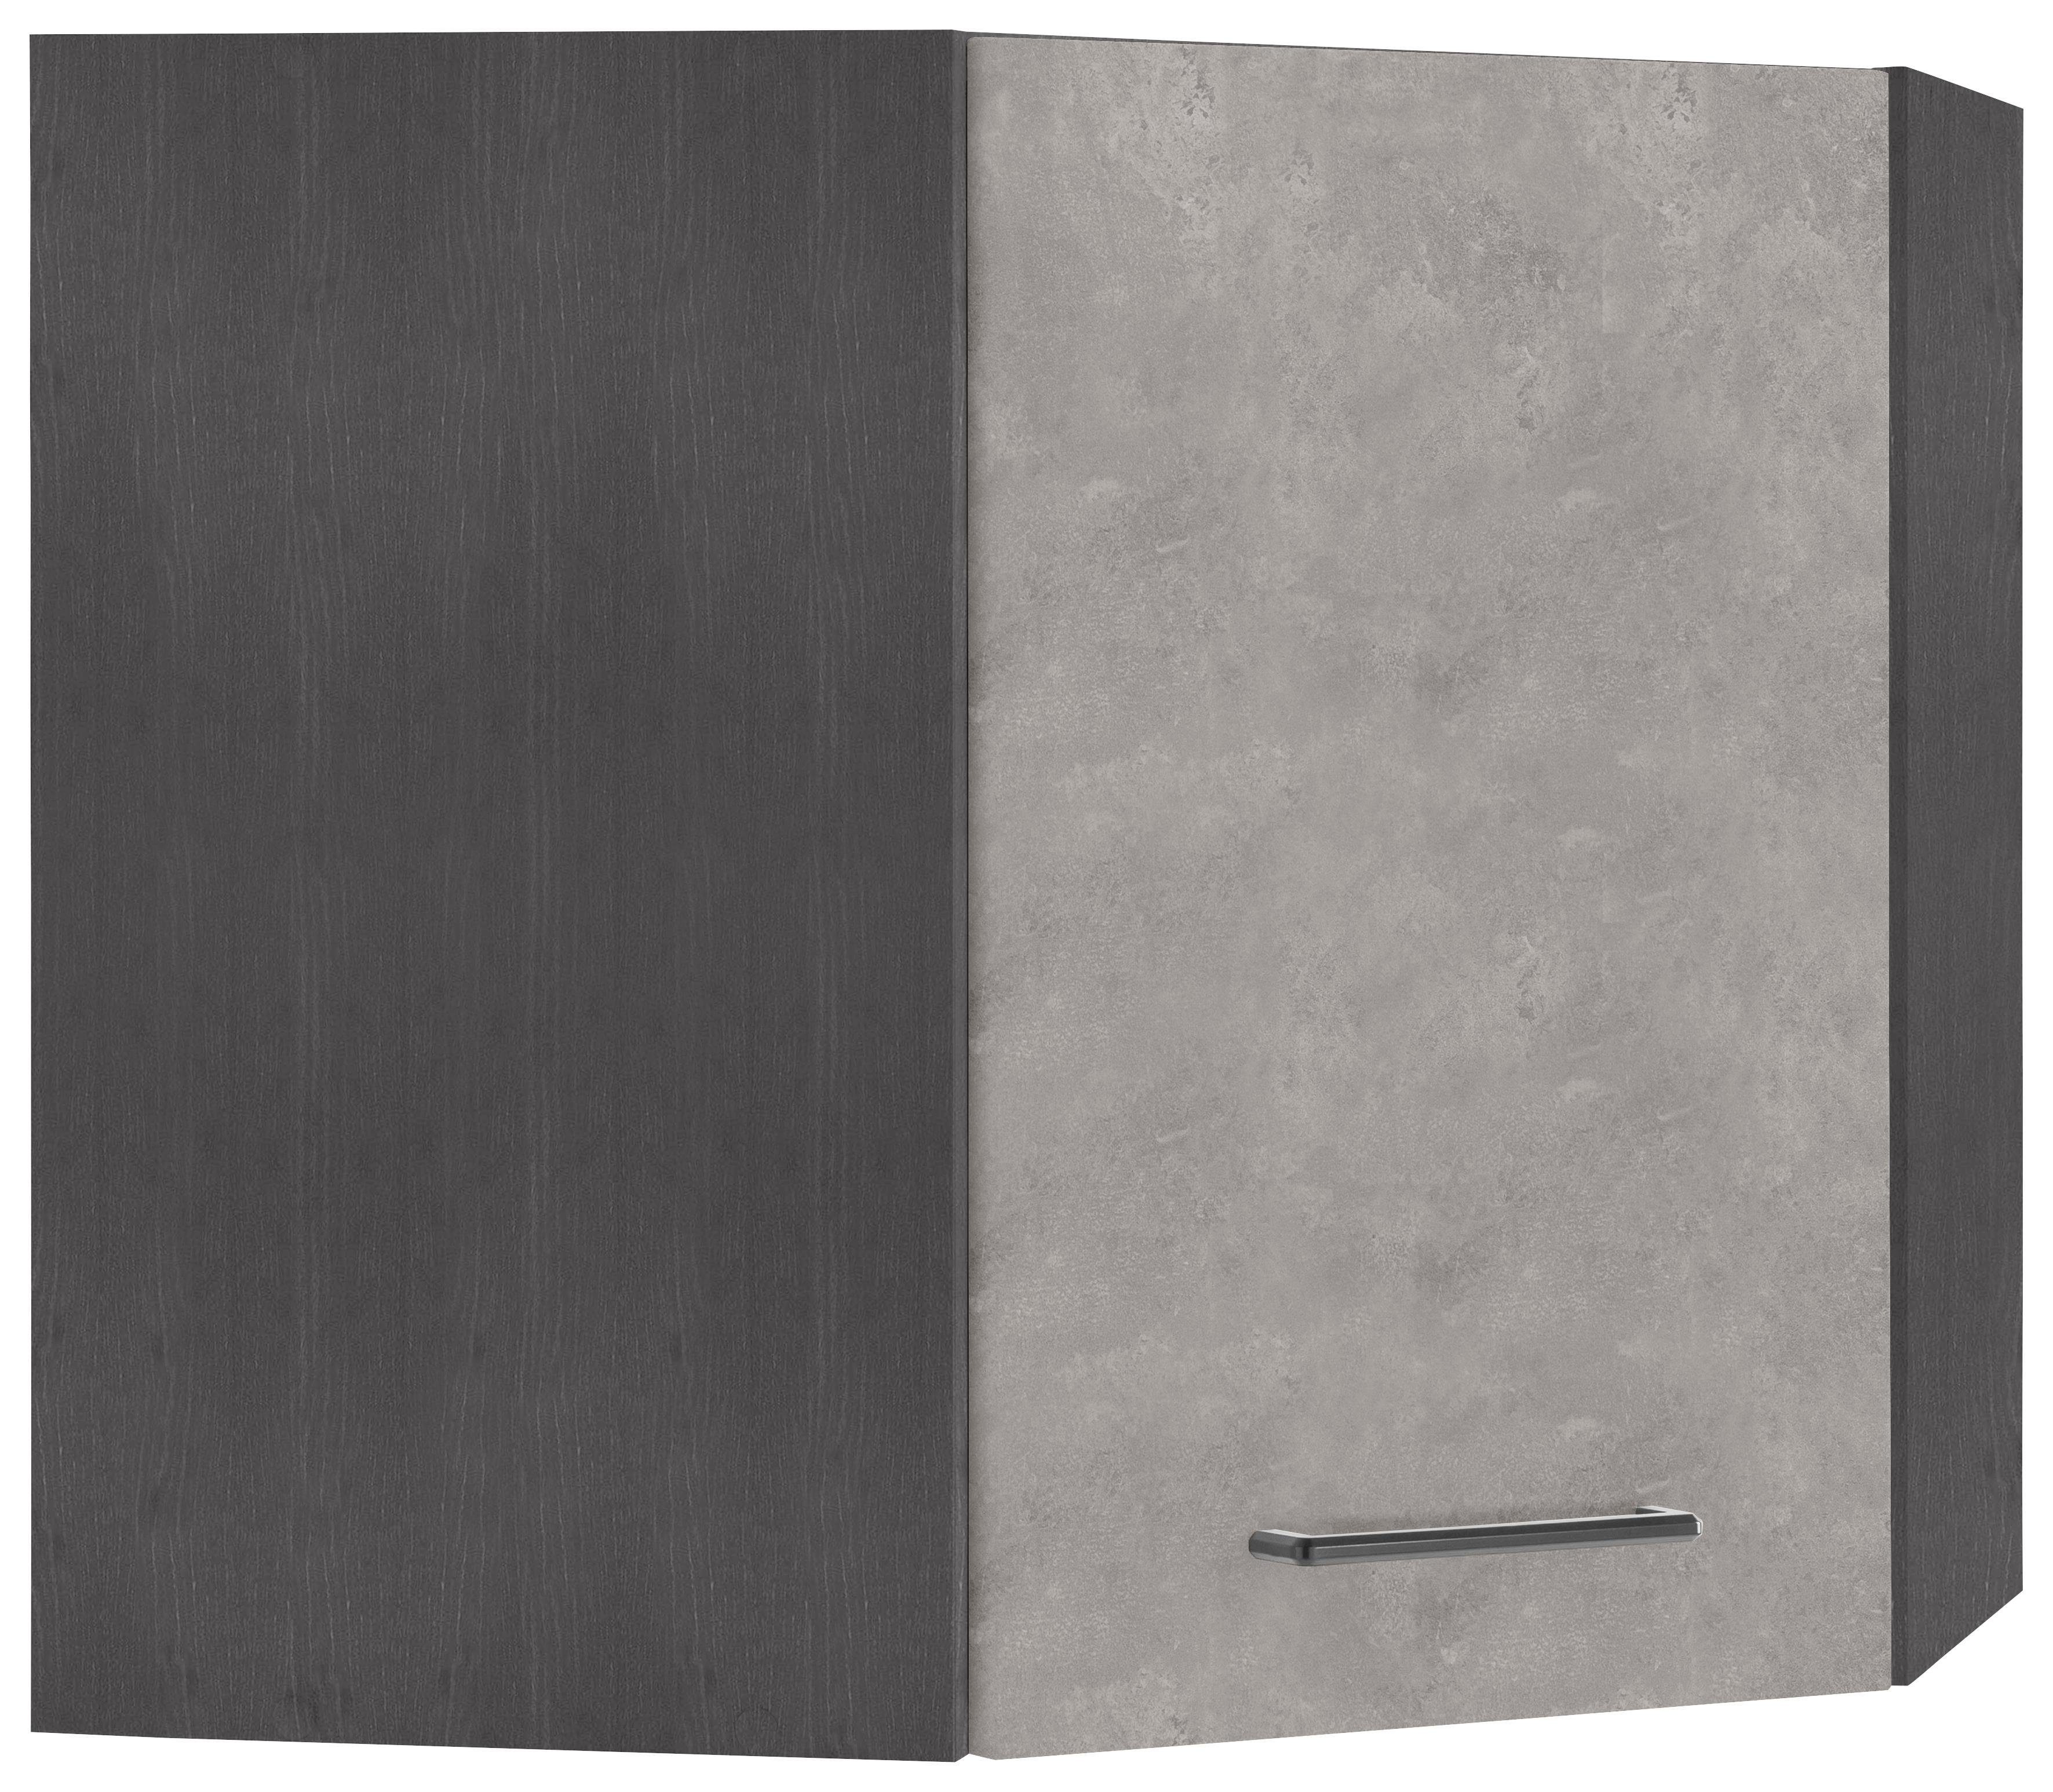 HELD MÖBEL Eckhängeschrank Tulsa 60 cm breit, 1 Tür, schwarzer Metallgriff, hochwertige MDF Front betonfarben hell | grafit